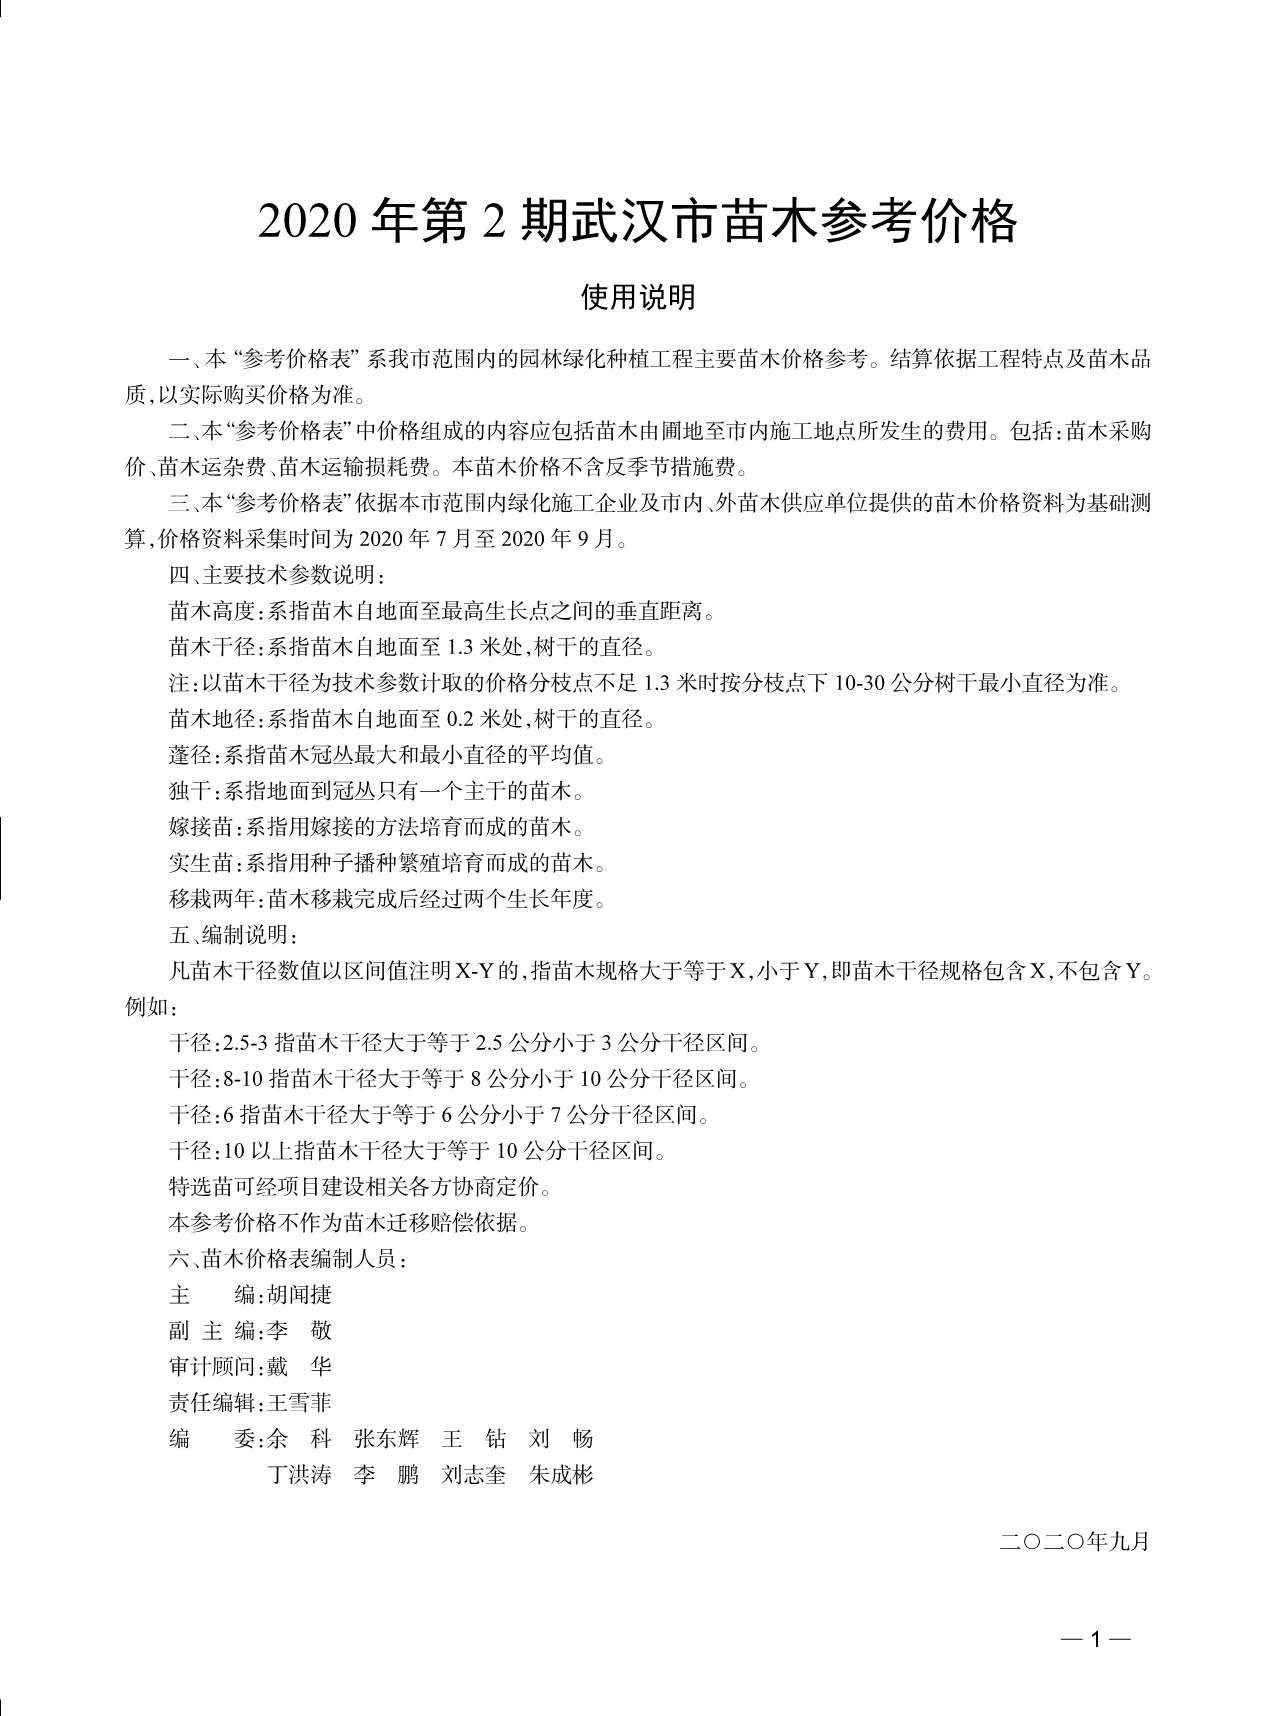 武汉市2020年2月园林信息价